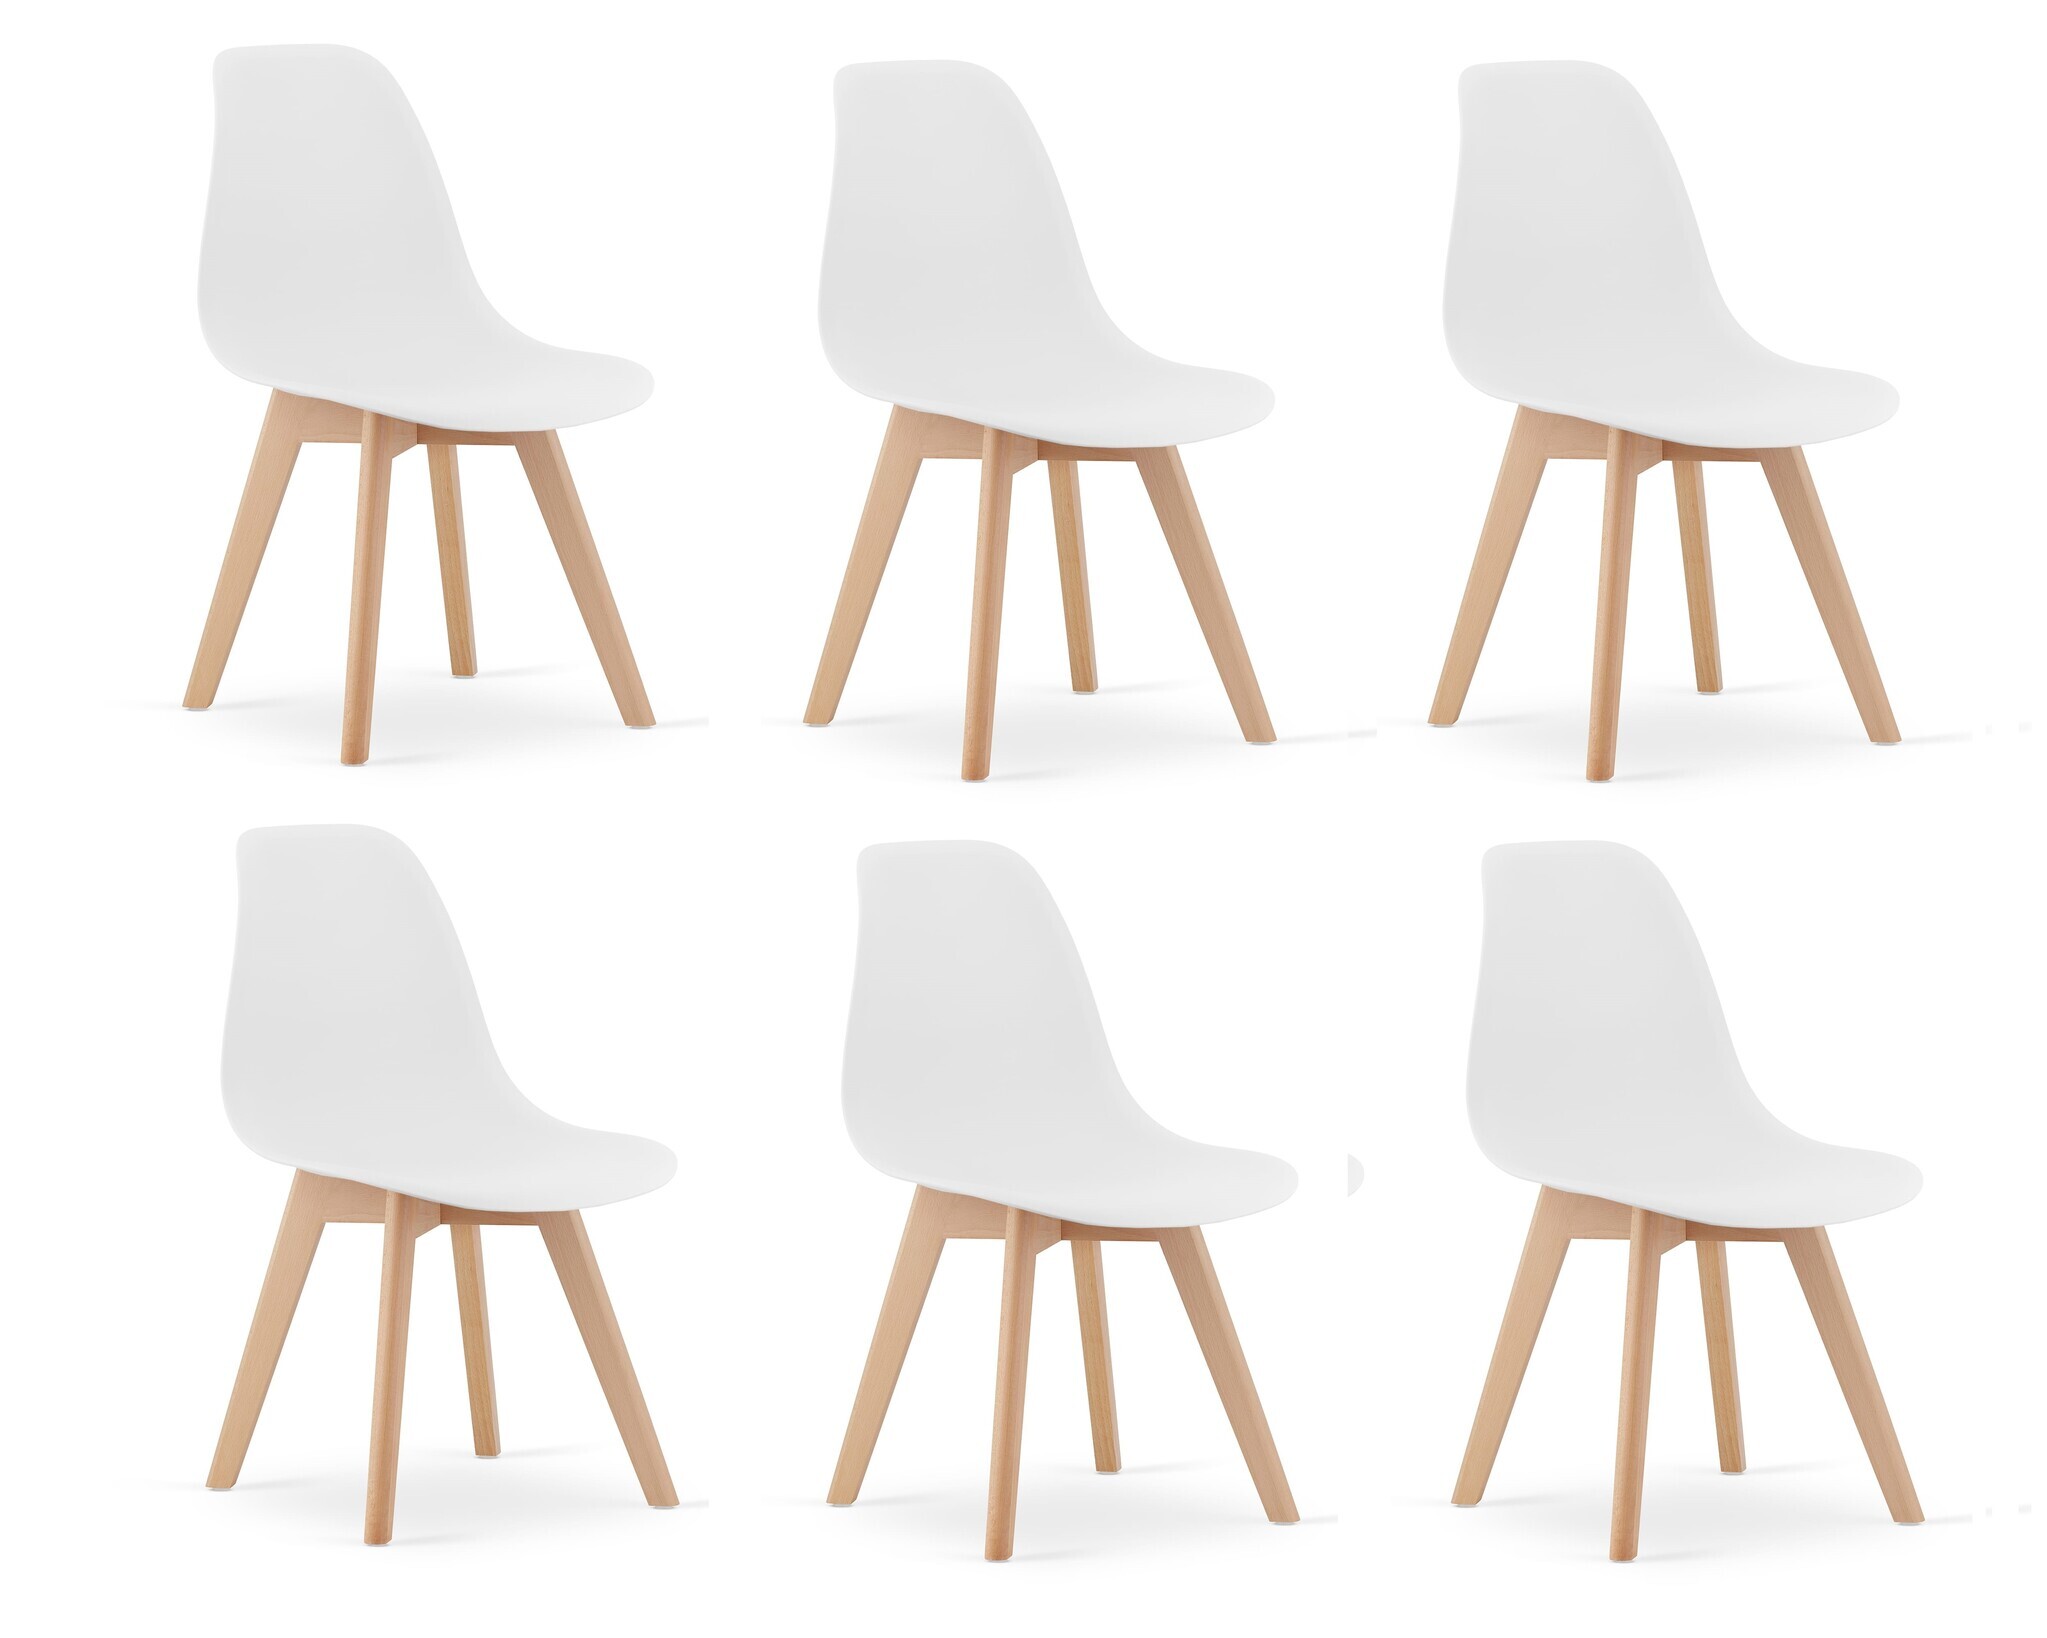 Viking Choice Eetkamerstoelen KITO - set van 6 eettafel stoelen - wit